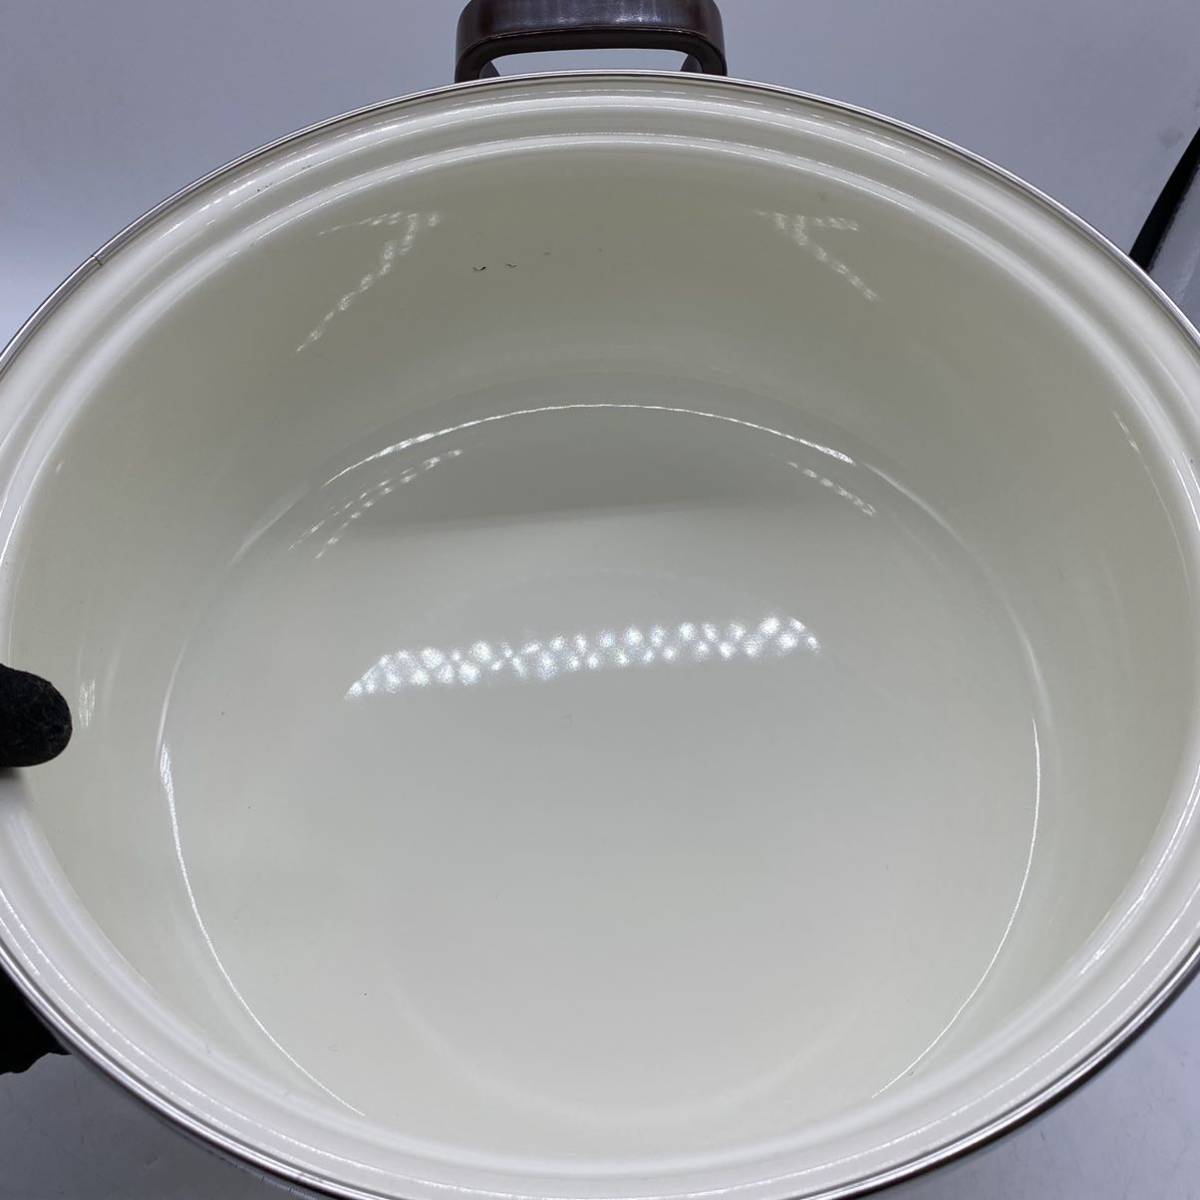 【送料無料】 キャクヨー ホーロー 両手鍋 ガラス蓋 調理器具 料理道具 レトロ